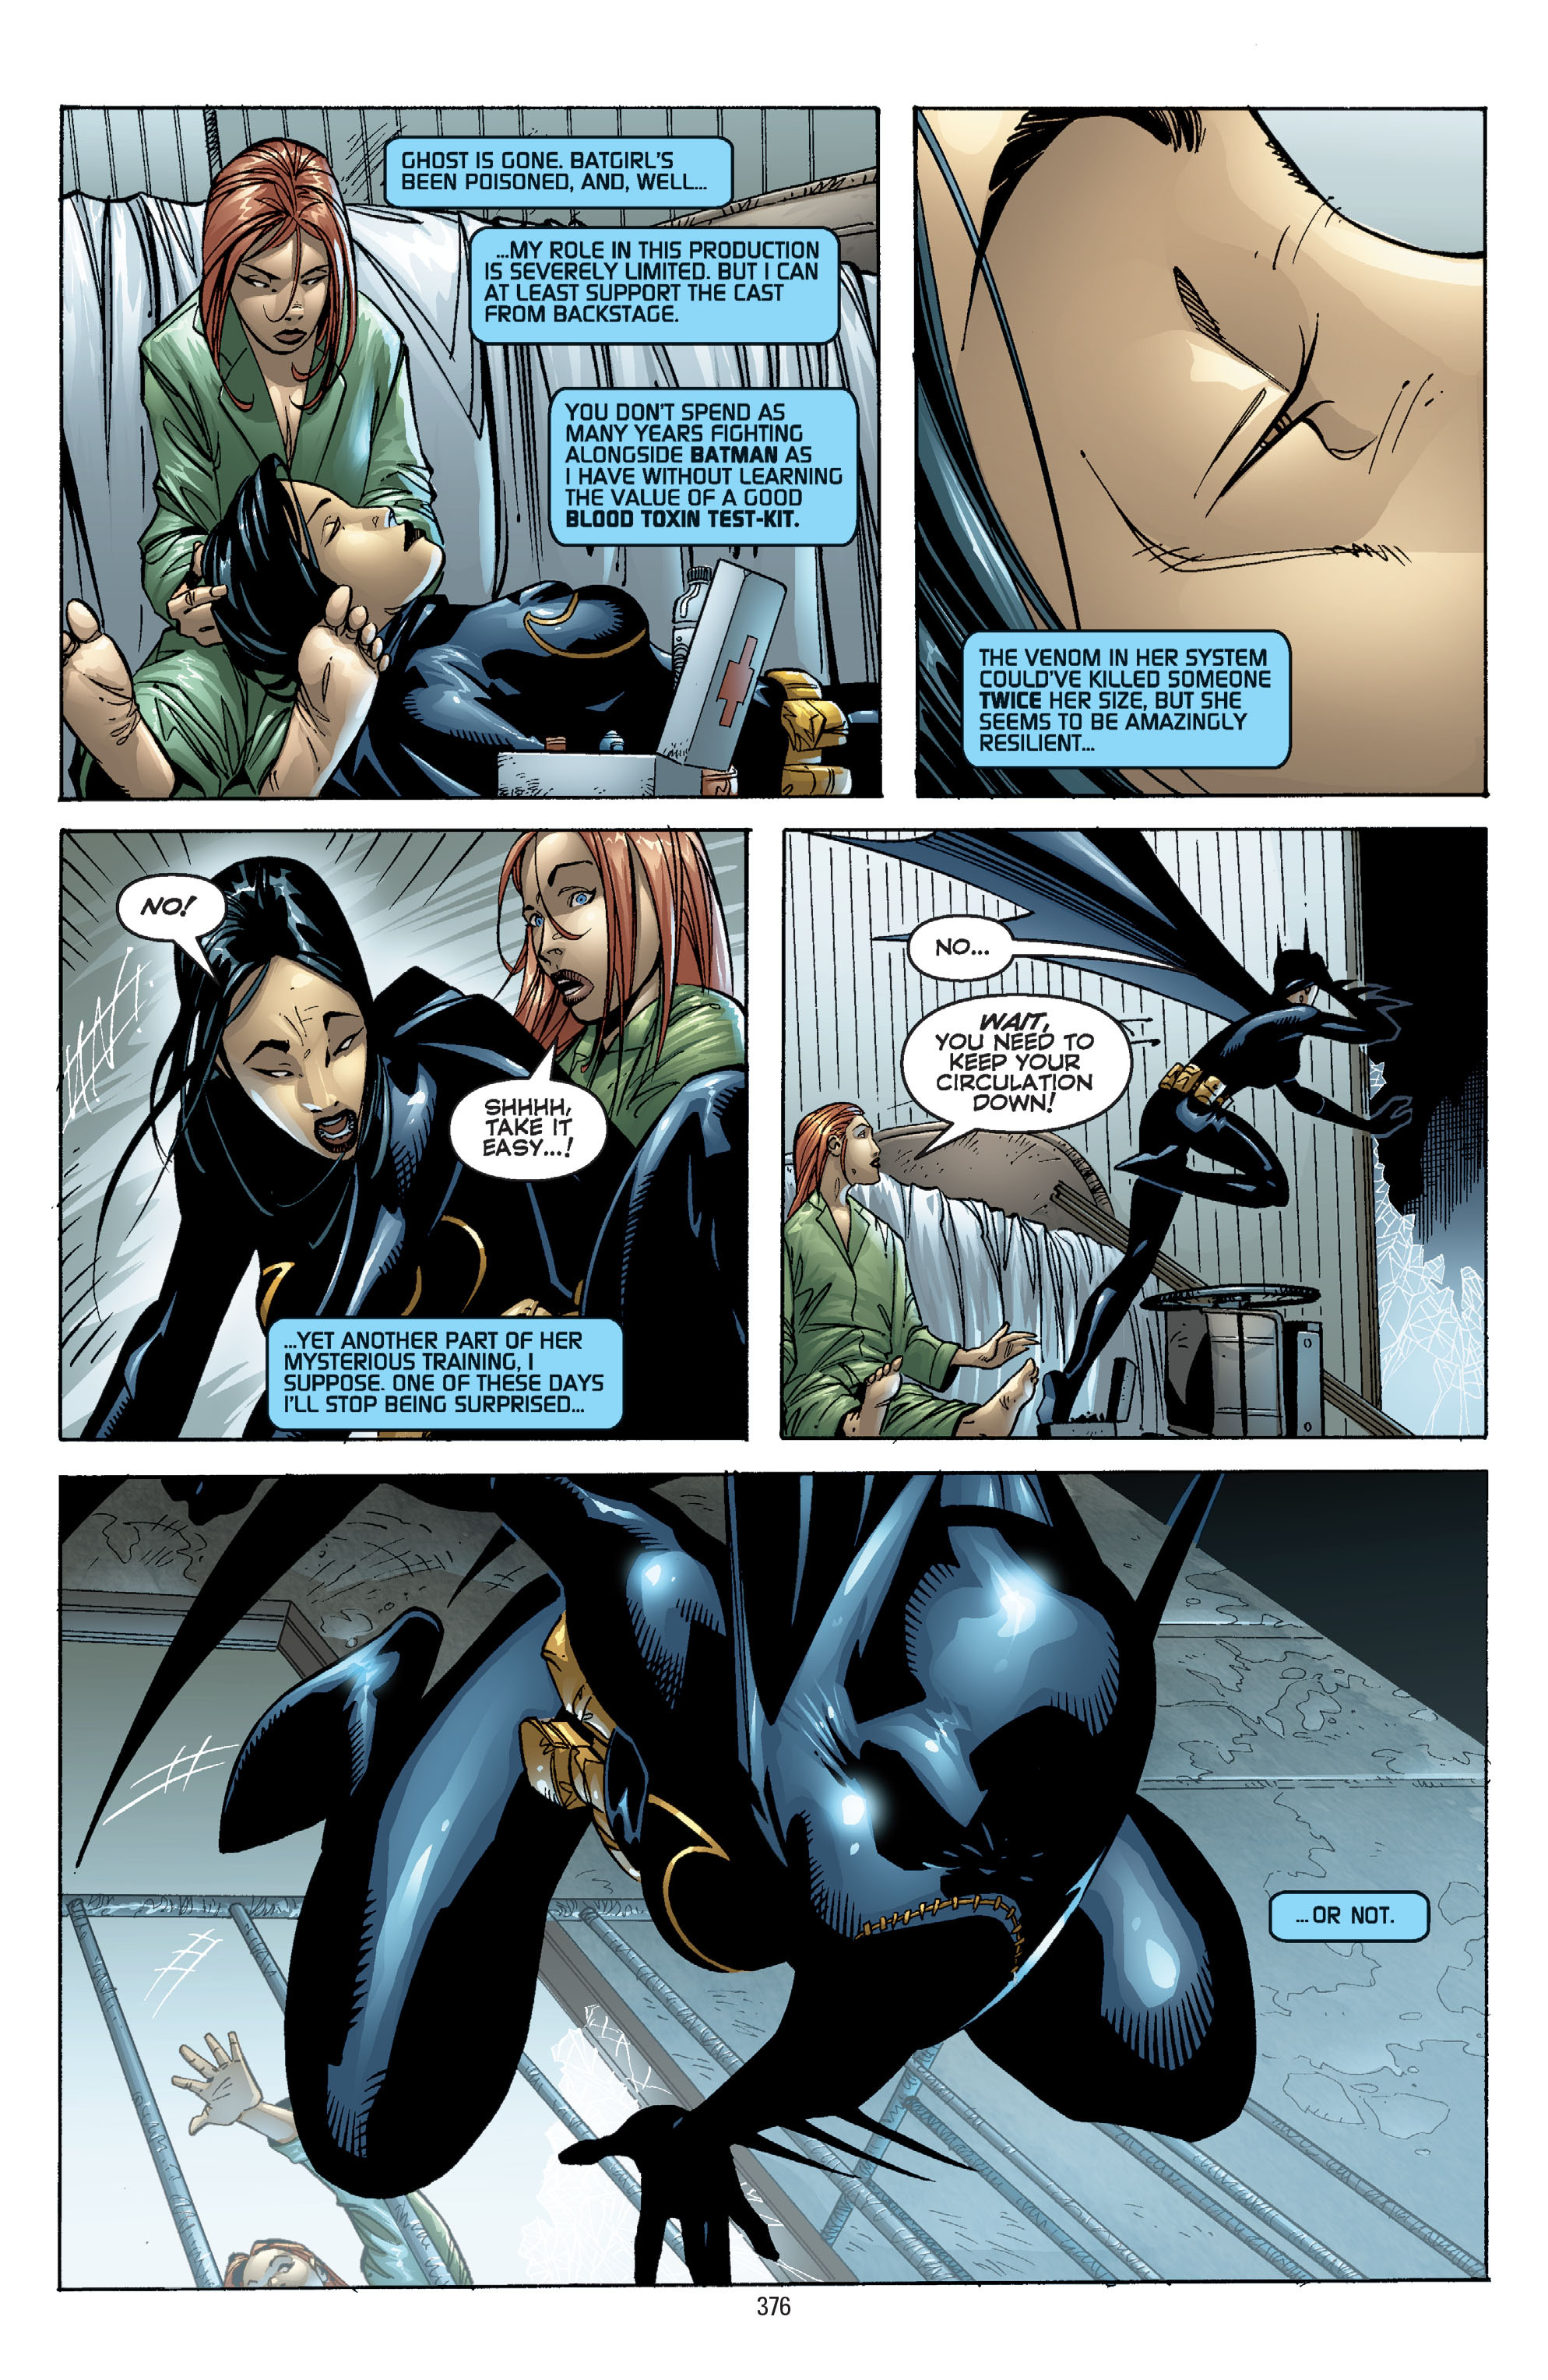 DC Comics/Dark Horse Comics: Justice League Full #1 - English 366